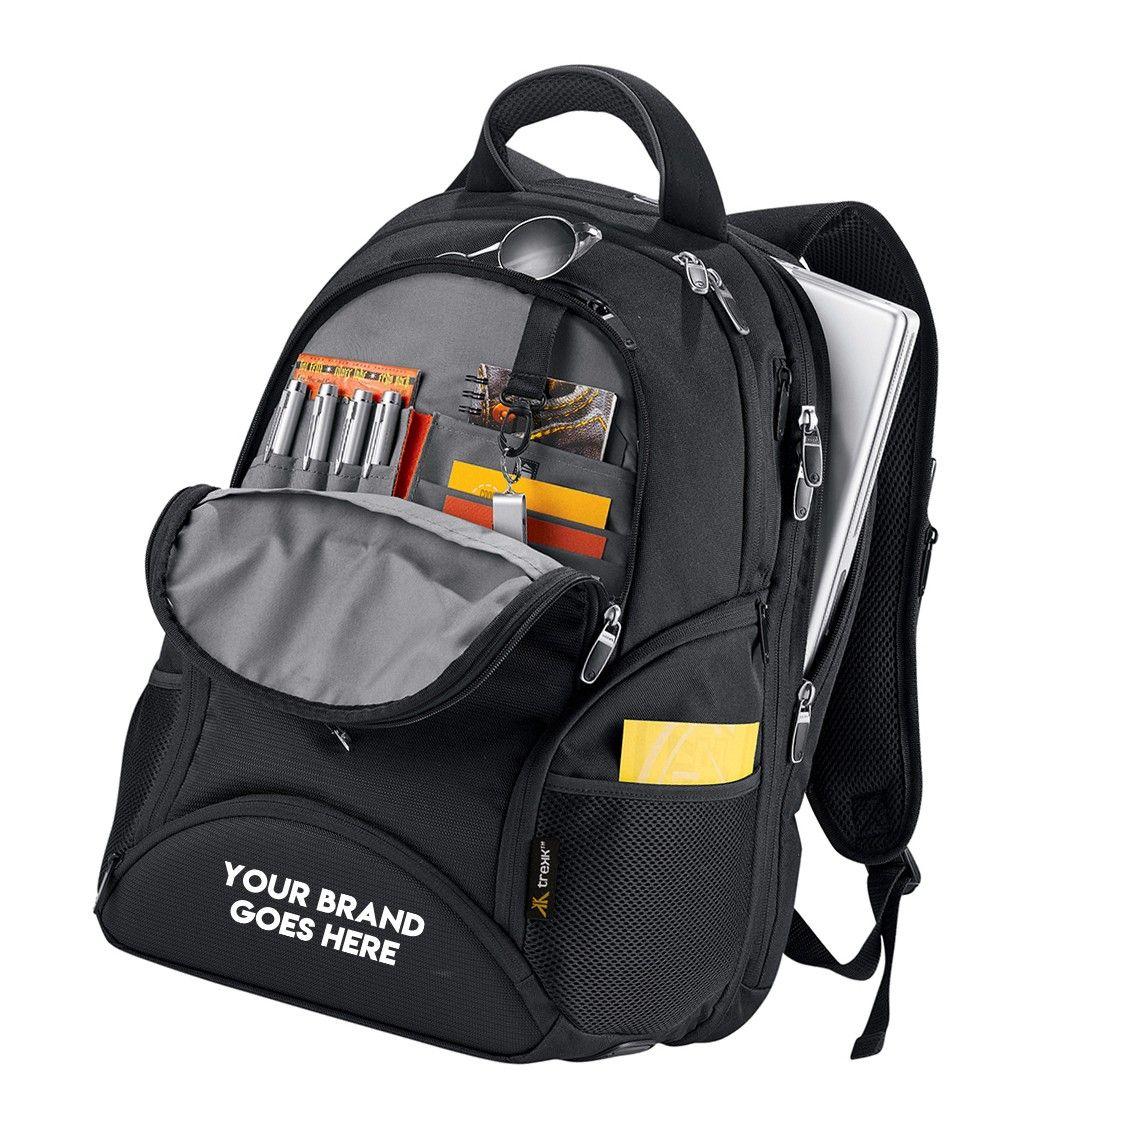 Australian Backpack Logo - Buy High Quality Outdoor Backpacks With Logo Branding | Australia online